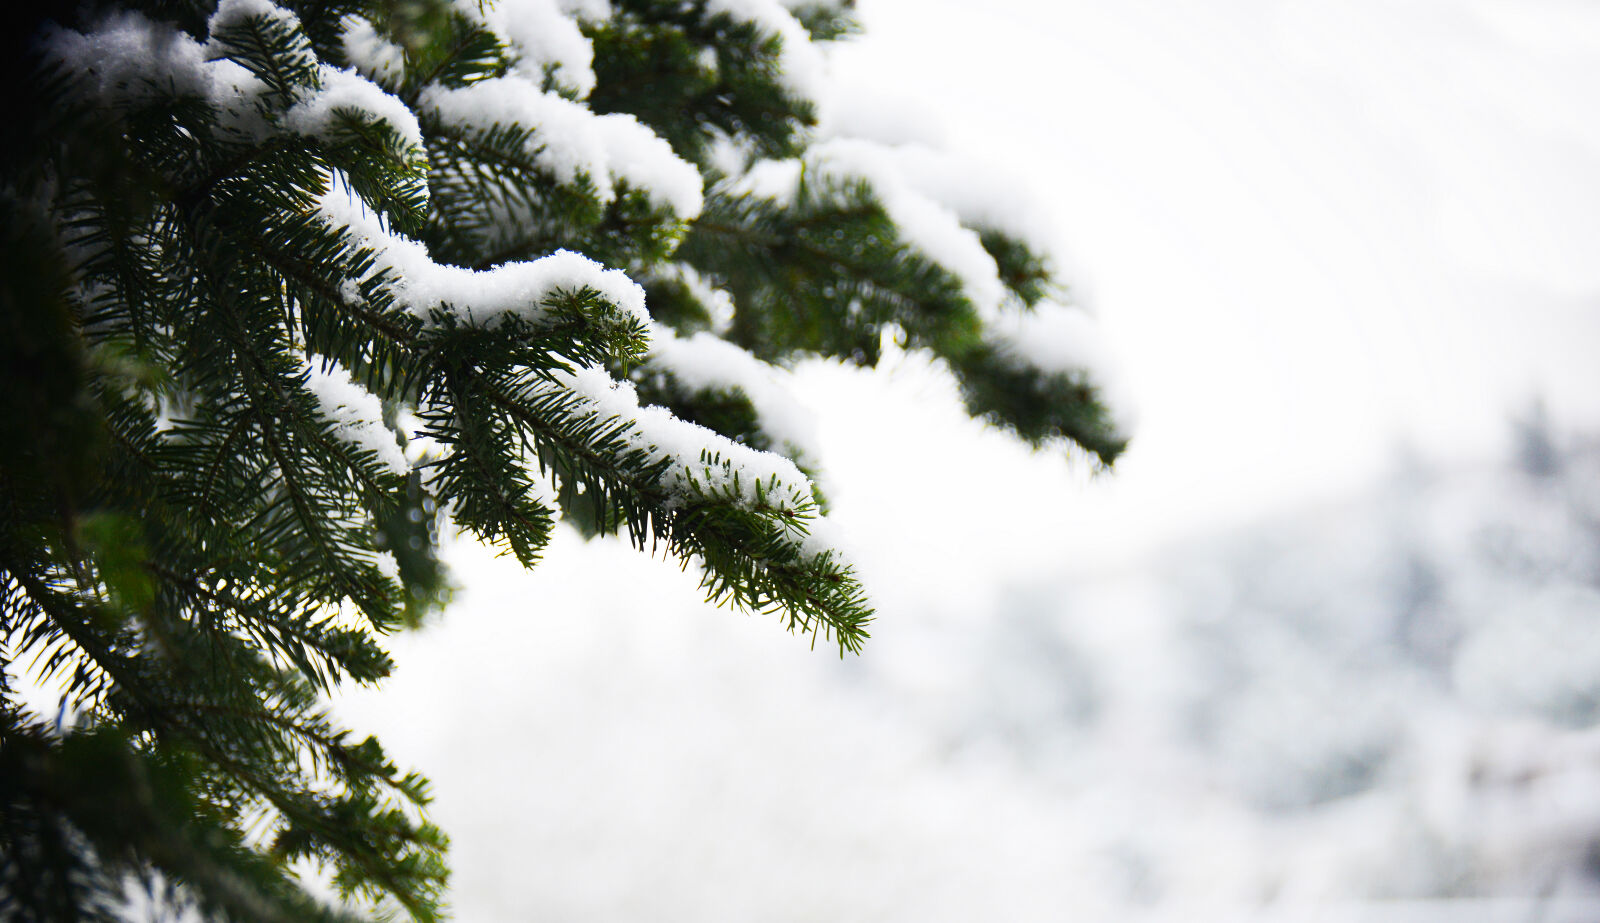 Nikon AF-S DX Nikkor 18-300mm F3.5-5.6G ED VR sample photo. Snow, white, tree photography